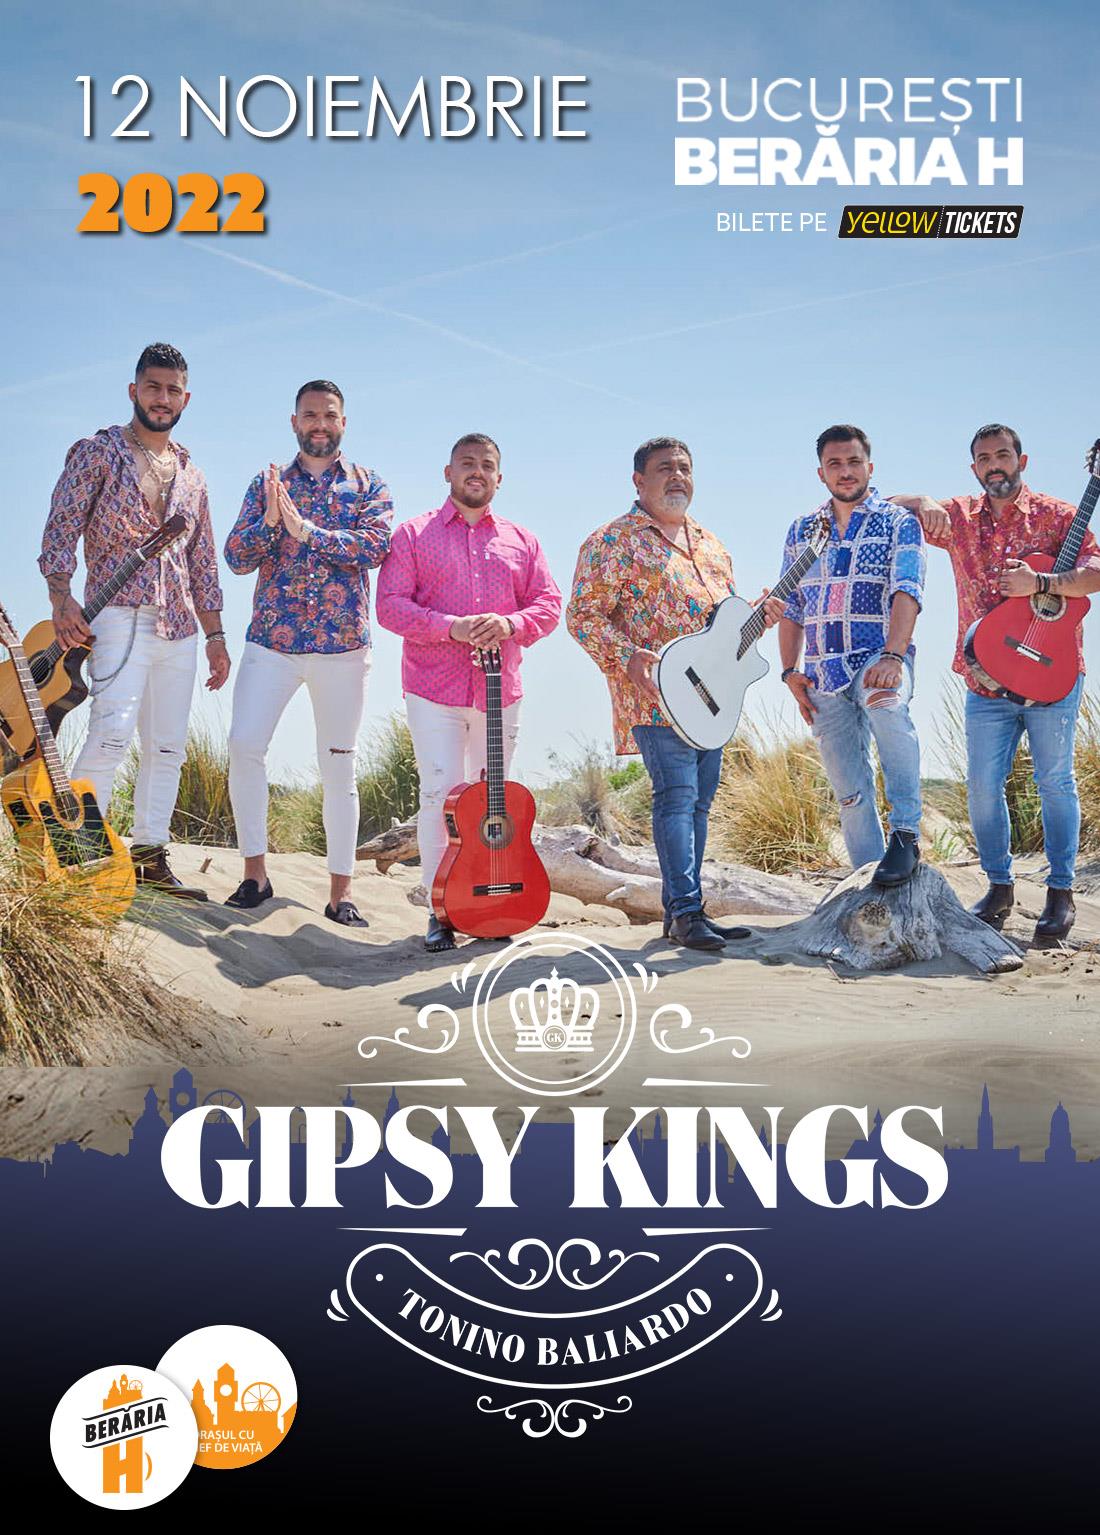 Celebrii Gipsy Kings concertează pe scena Berăriei H pe 12 noiembrie